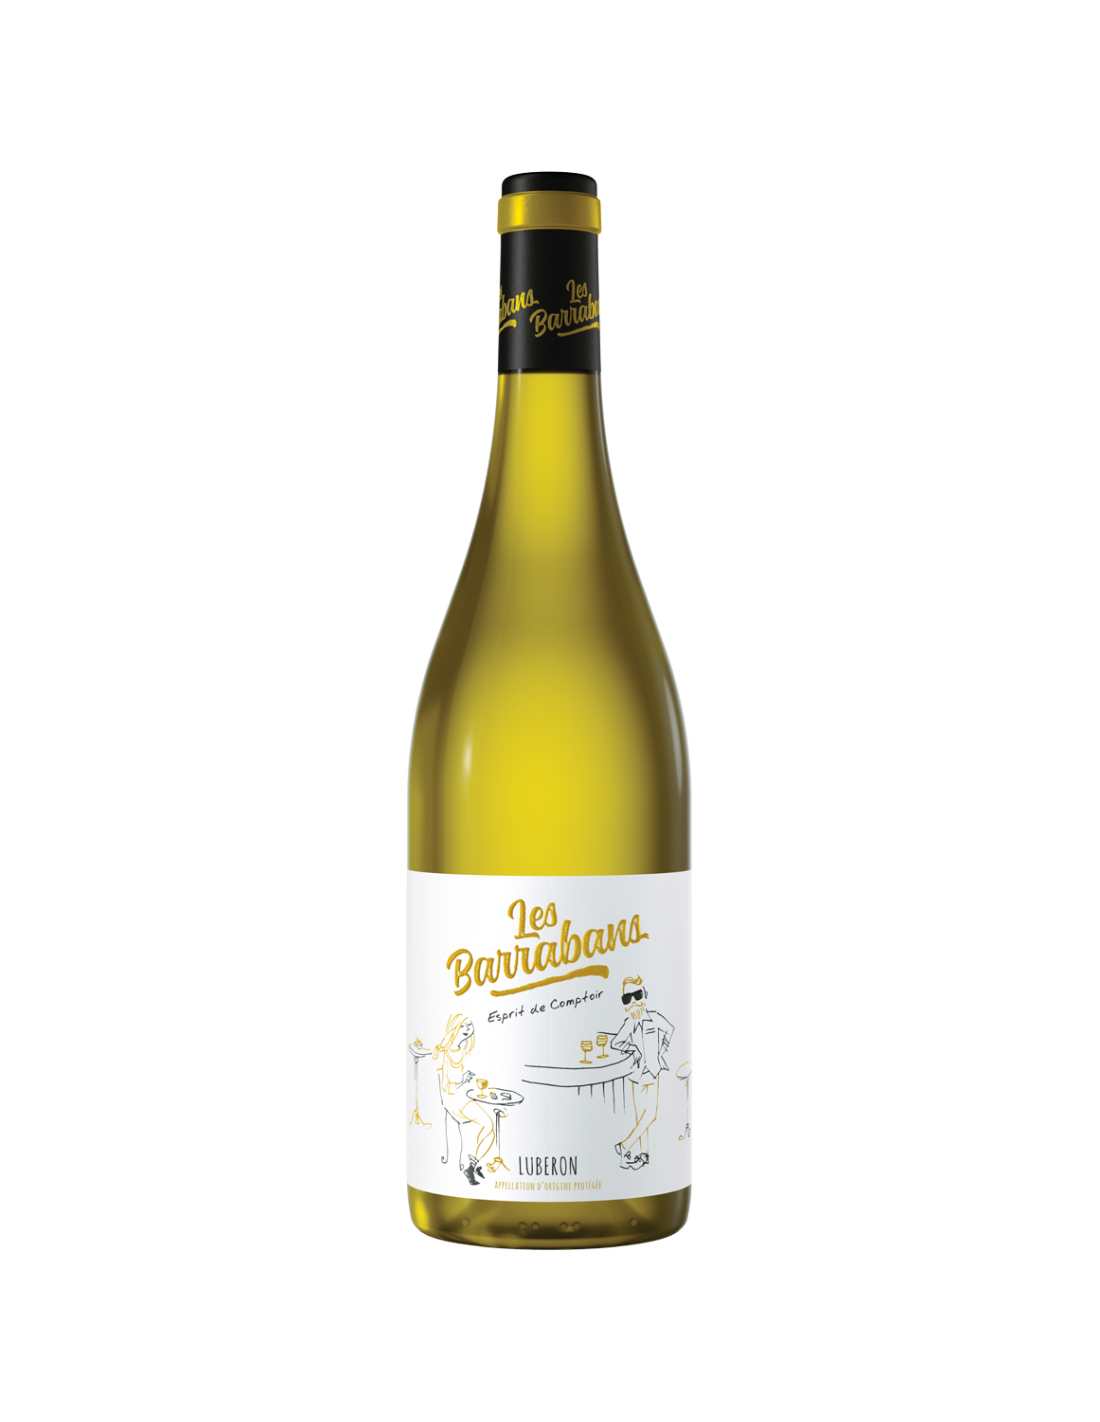 Vin alb sec Les Barrabans Luberon, 12% alc., 0.75L, Franta alcooldiscount.ro